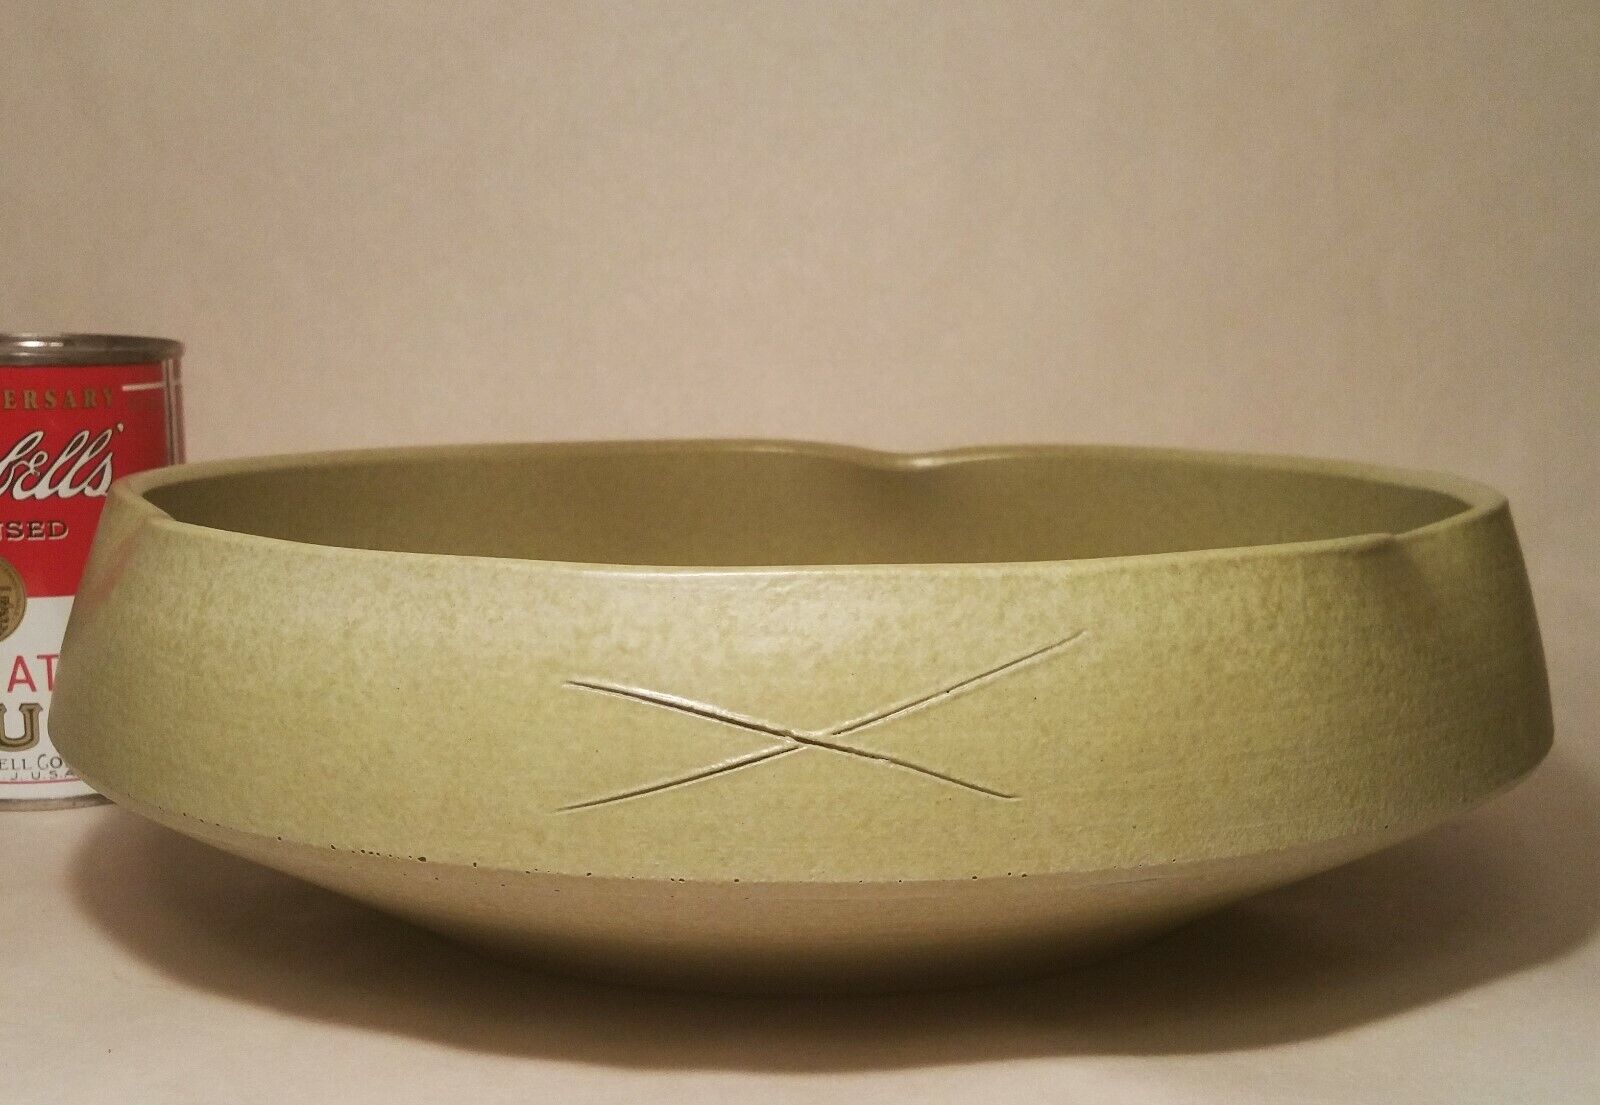 COMPETITION IKEBANA vtg japanese flower studio art pottery vase avocado green